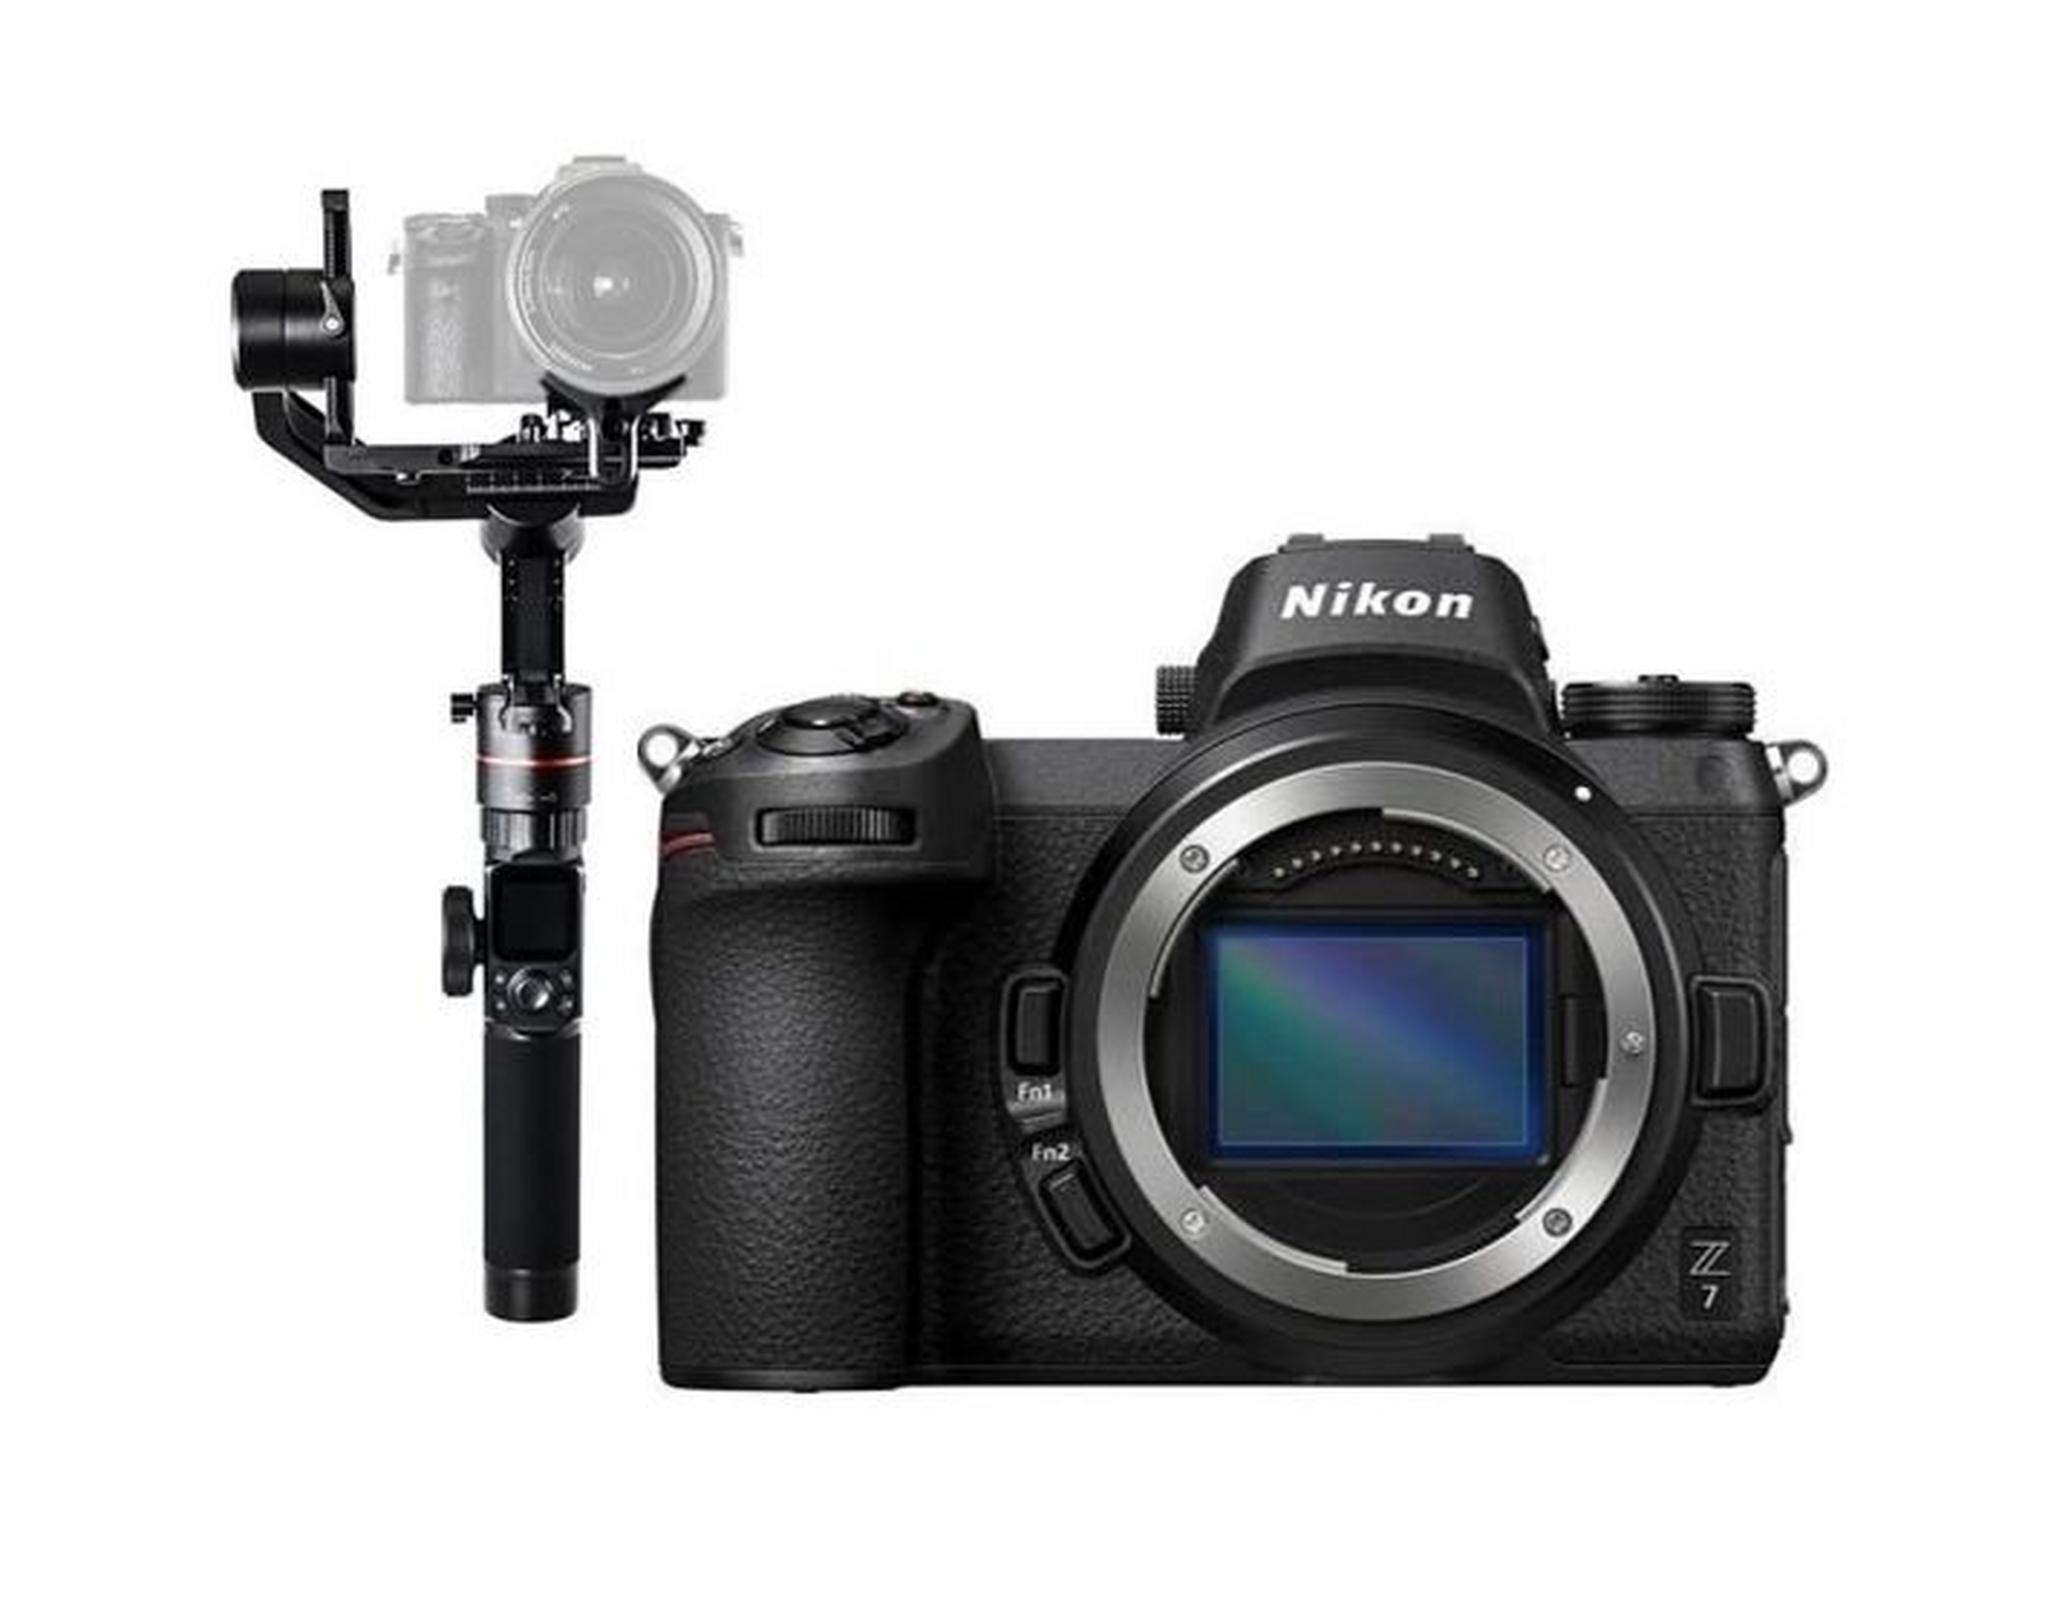 Nikon Z 7 Mirrorless Digital Camera (Body Only) + FeiyuTech AK2000 Wi-Fi Gimbal Stabilizer